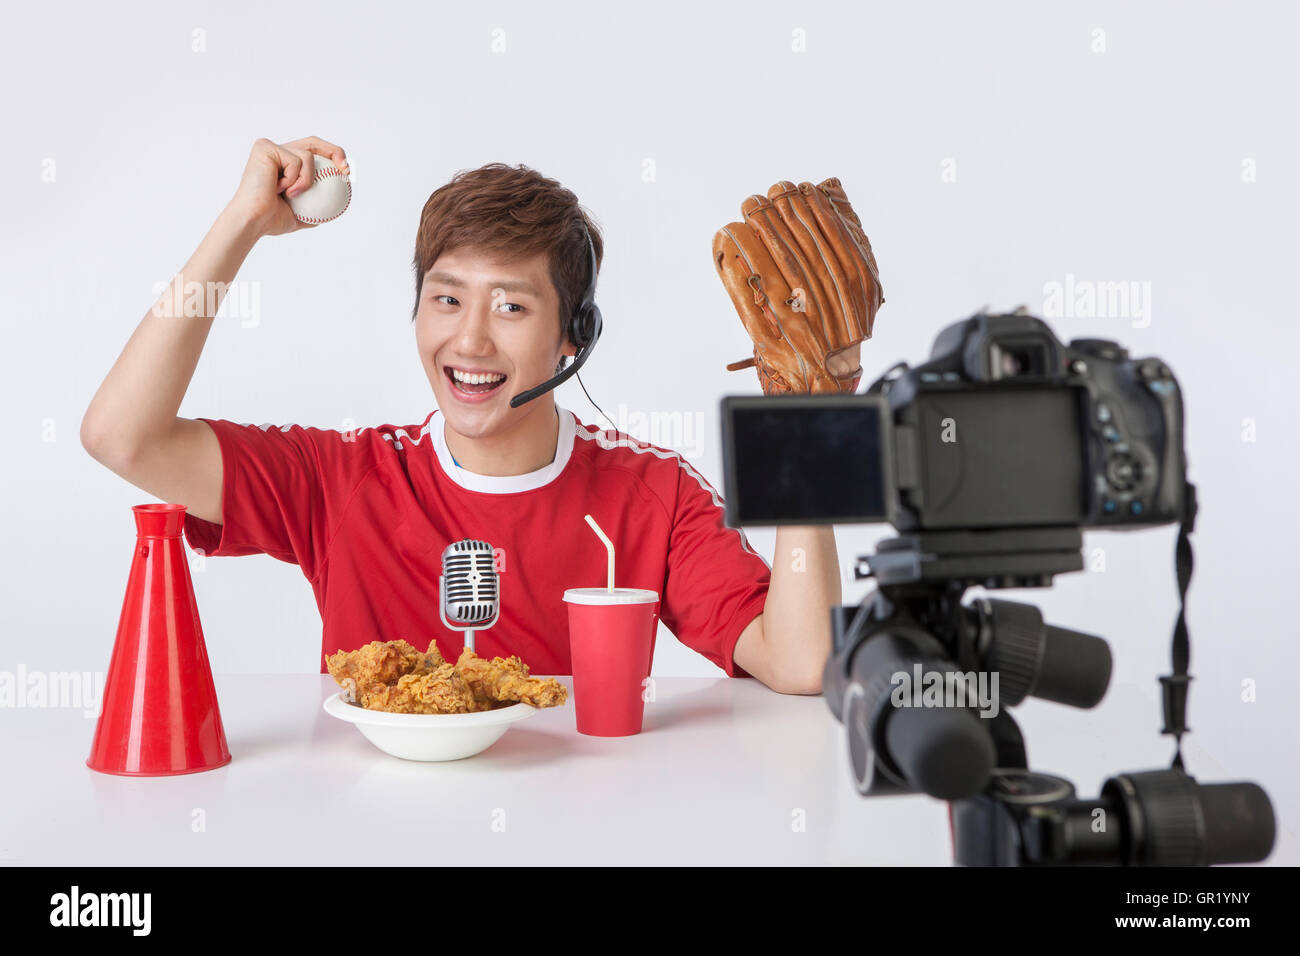 Porträt der jungen Mann mit Baseball und Essen auf Tisch vor der Kamera posiert lächelnd Stockfoto